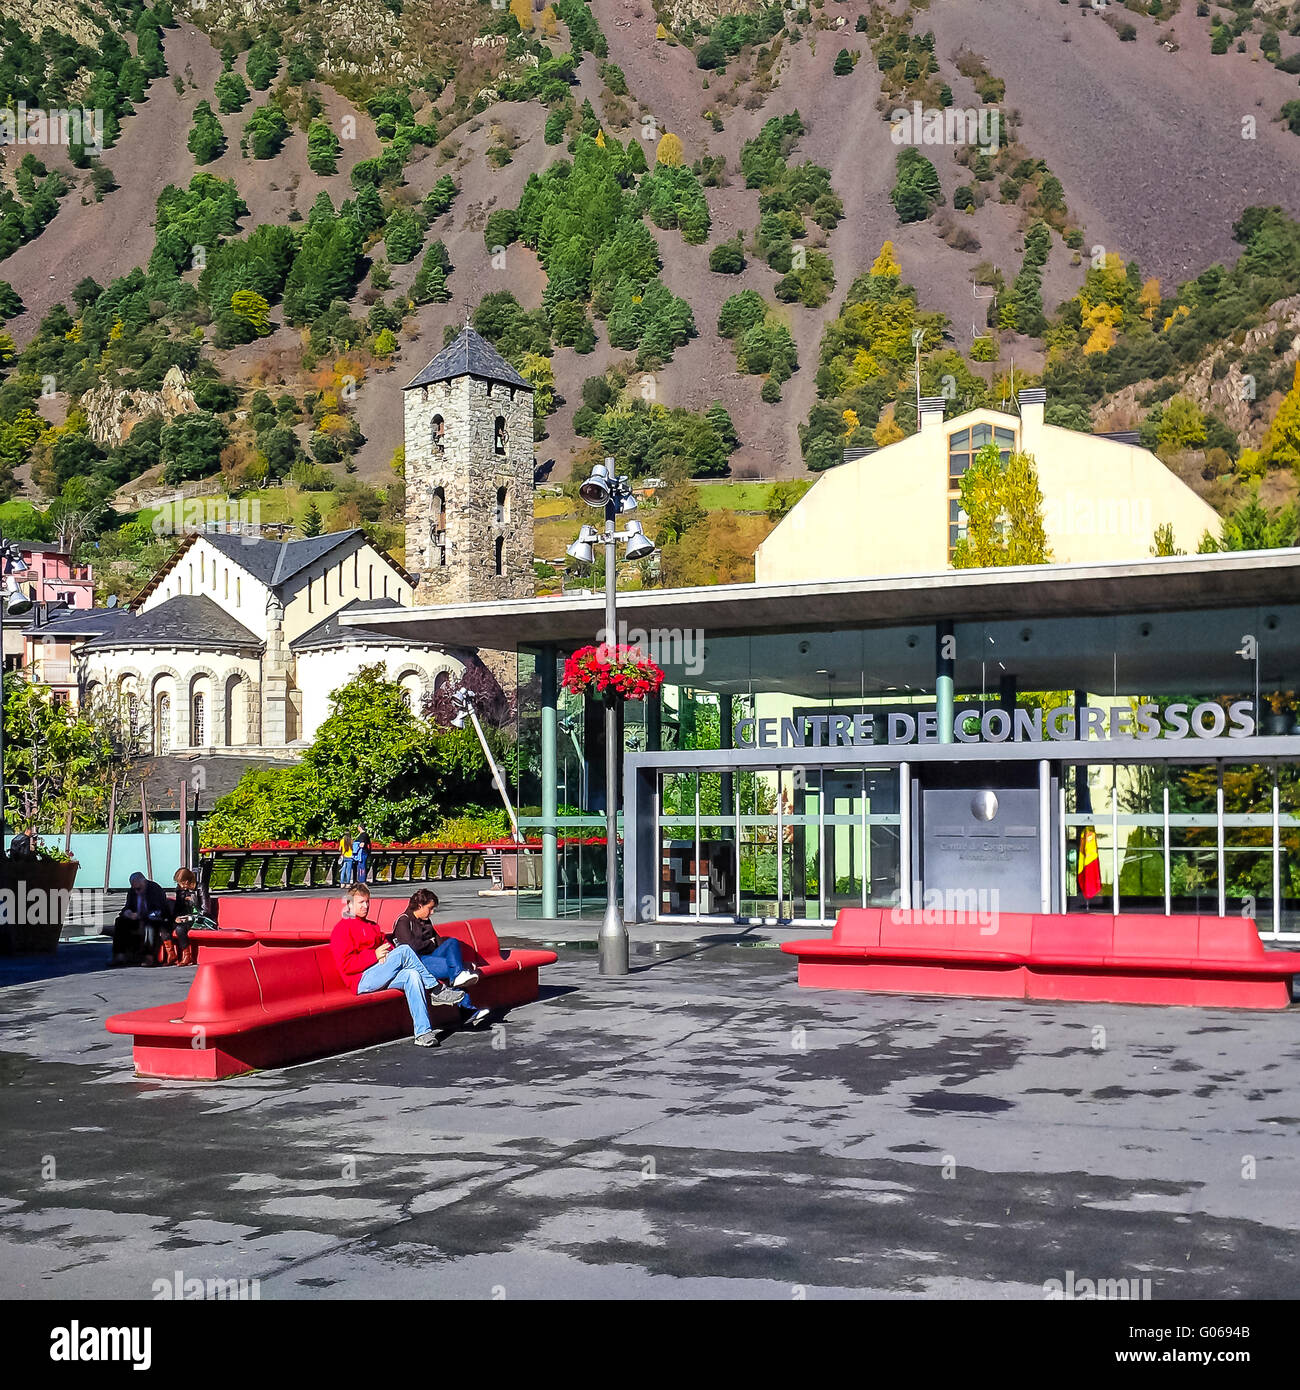 Centre de Congressos. Andorra la Vella. Andorra Stockfoto